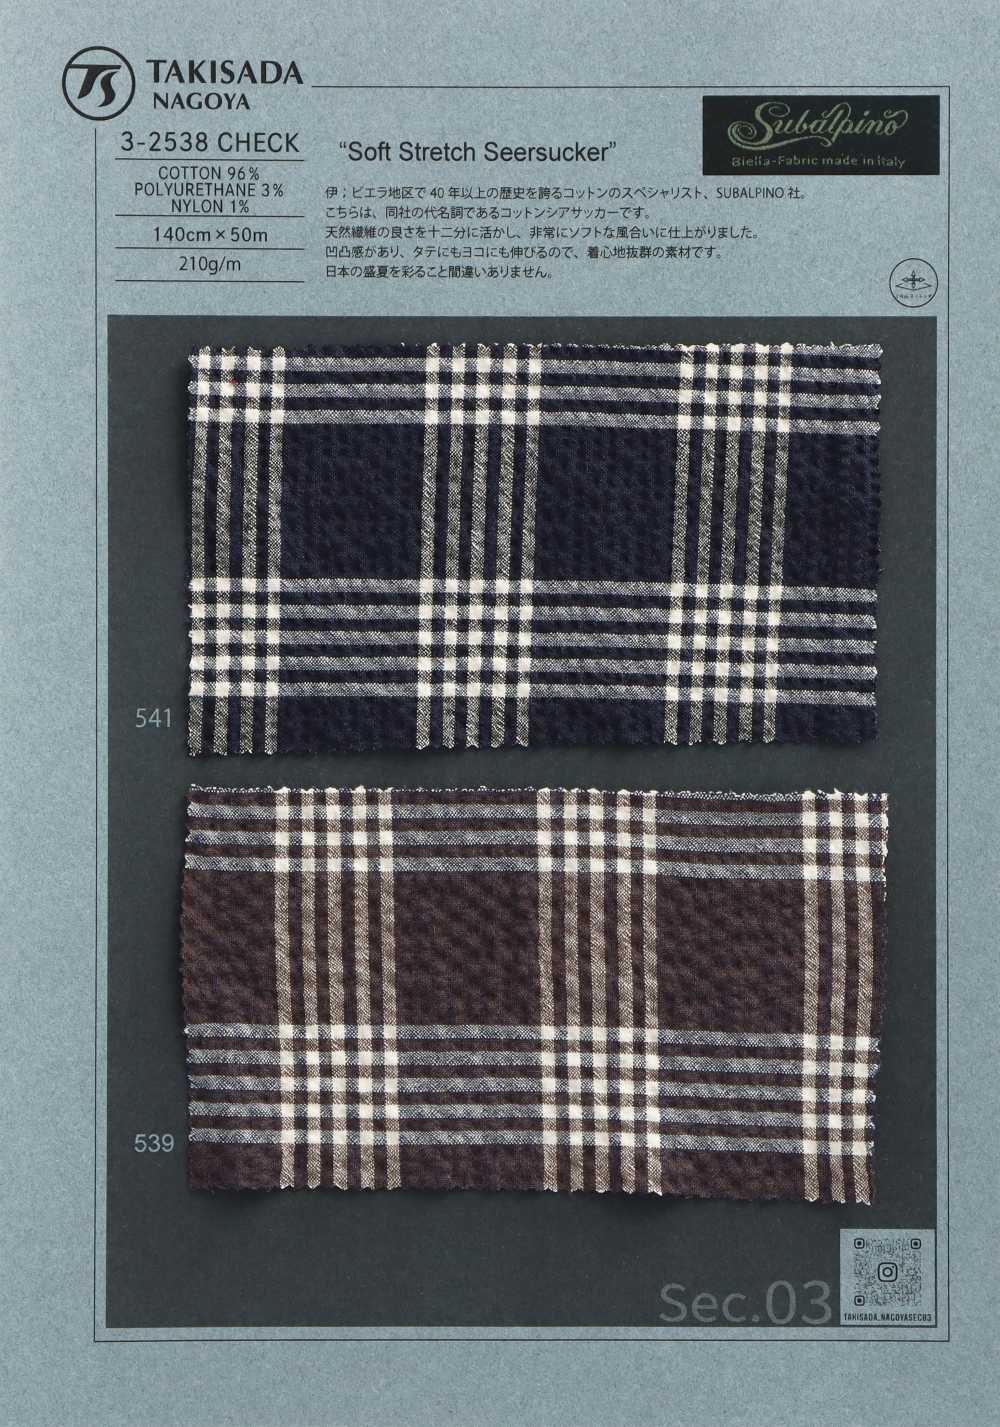 3-2538CHECK SUBALPINO Schere Seersucker Check[Textilgewebe] Takisada Nagoya